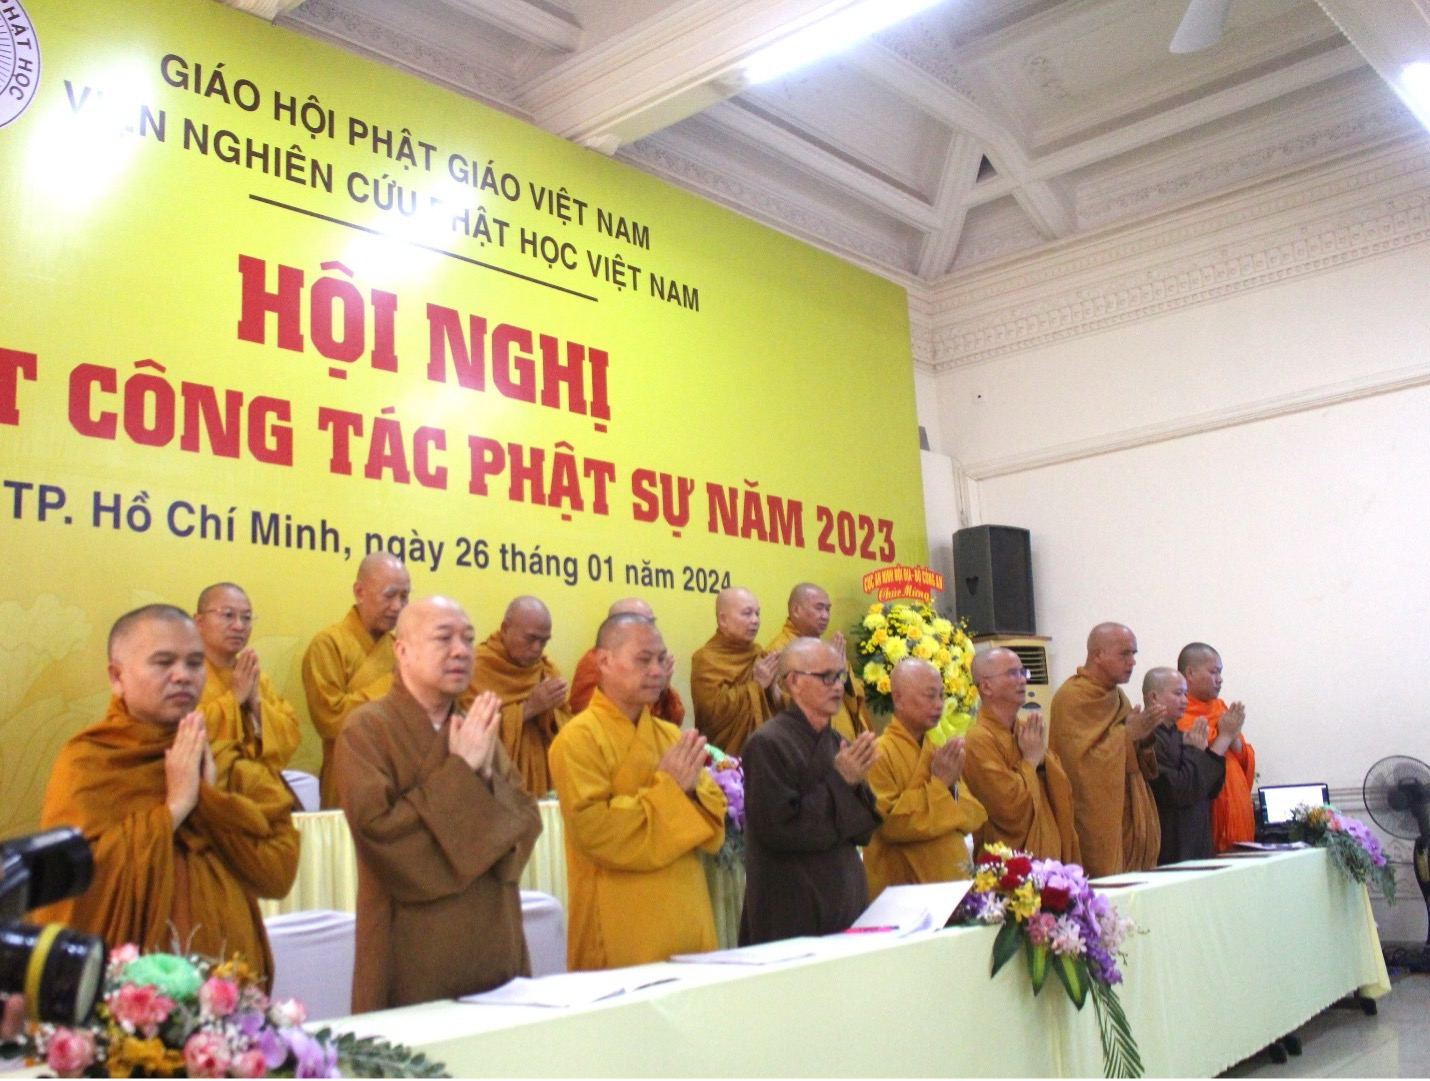 TP.HCM: Viện nghiên cứu Phật học Việt Nam tổ chức hội nghị Tổng kết Phật sự năm 2023 - Picture1.jpg (416623 KB)